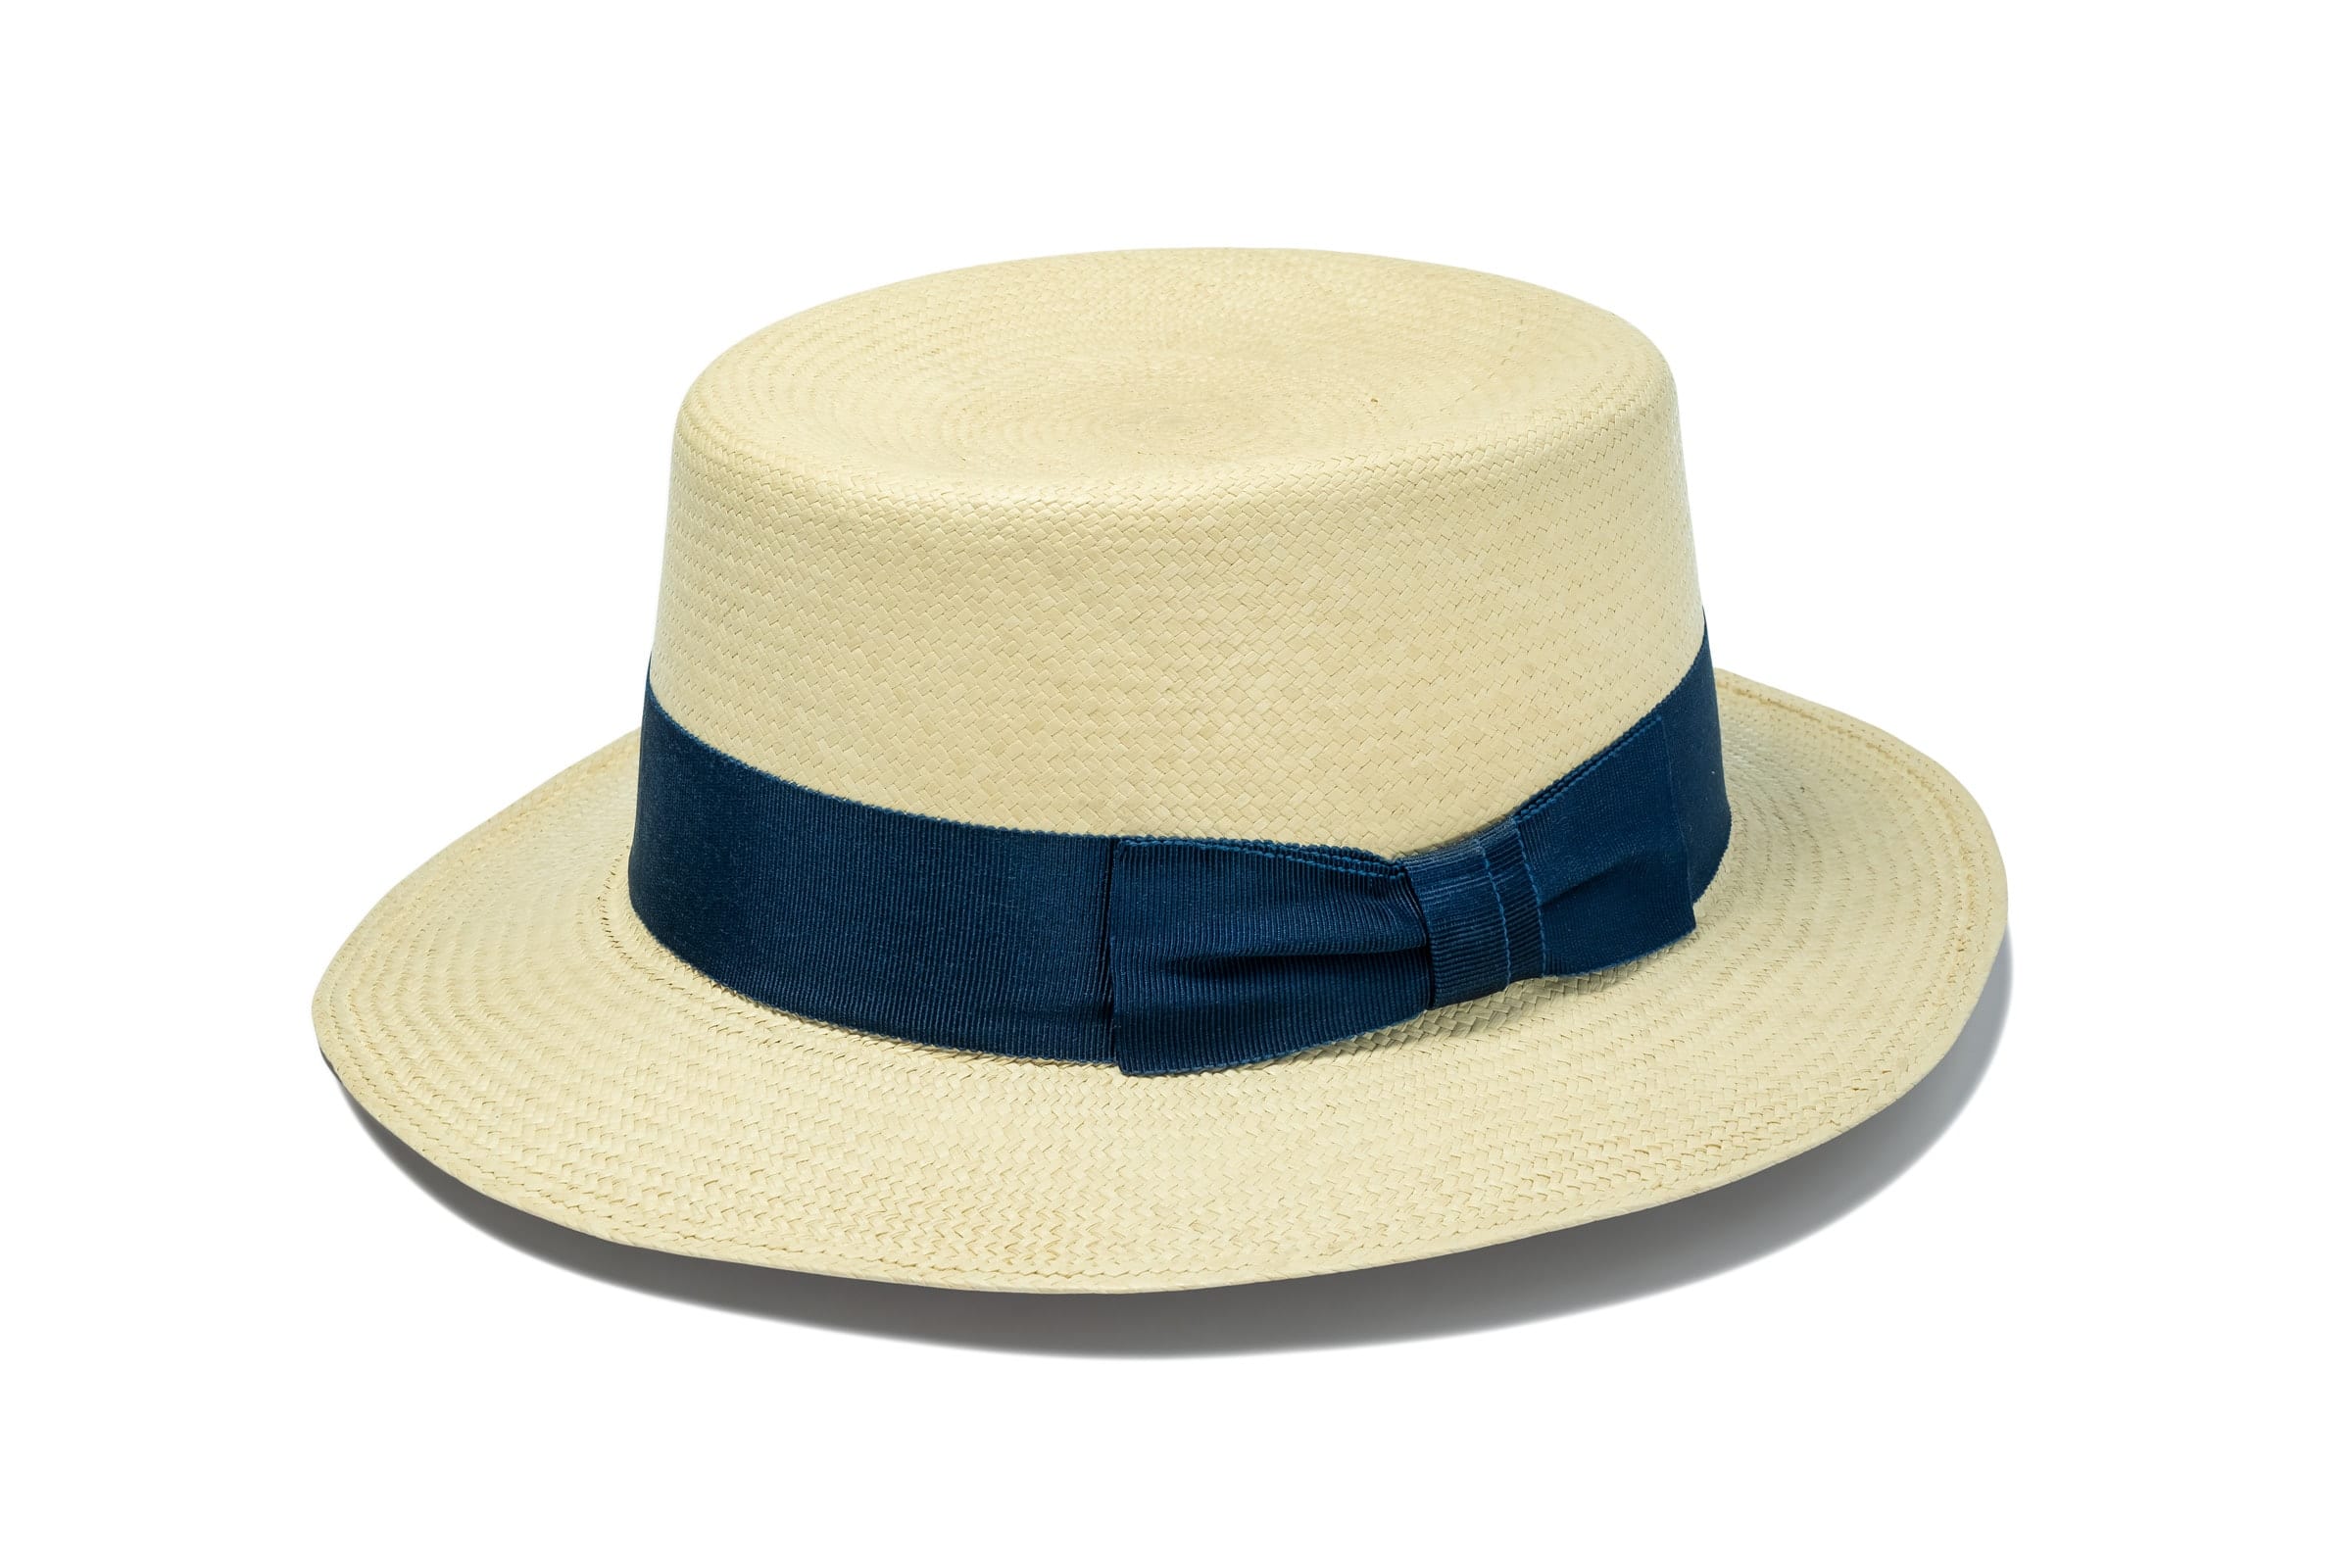  Women handmade Panama Hats